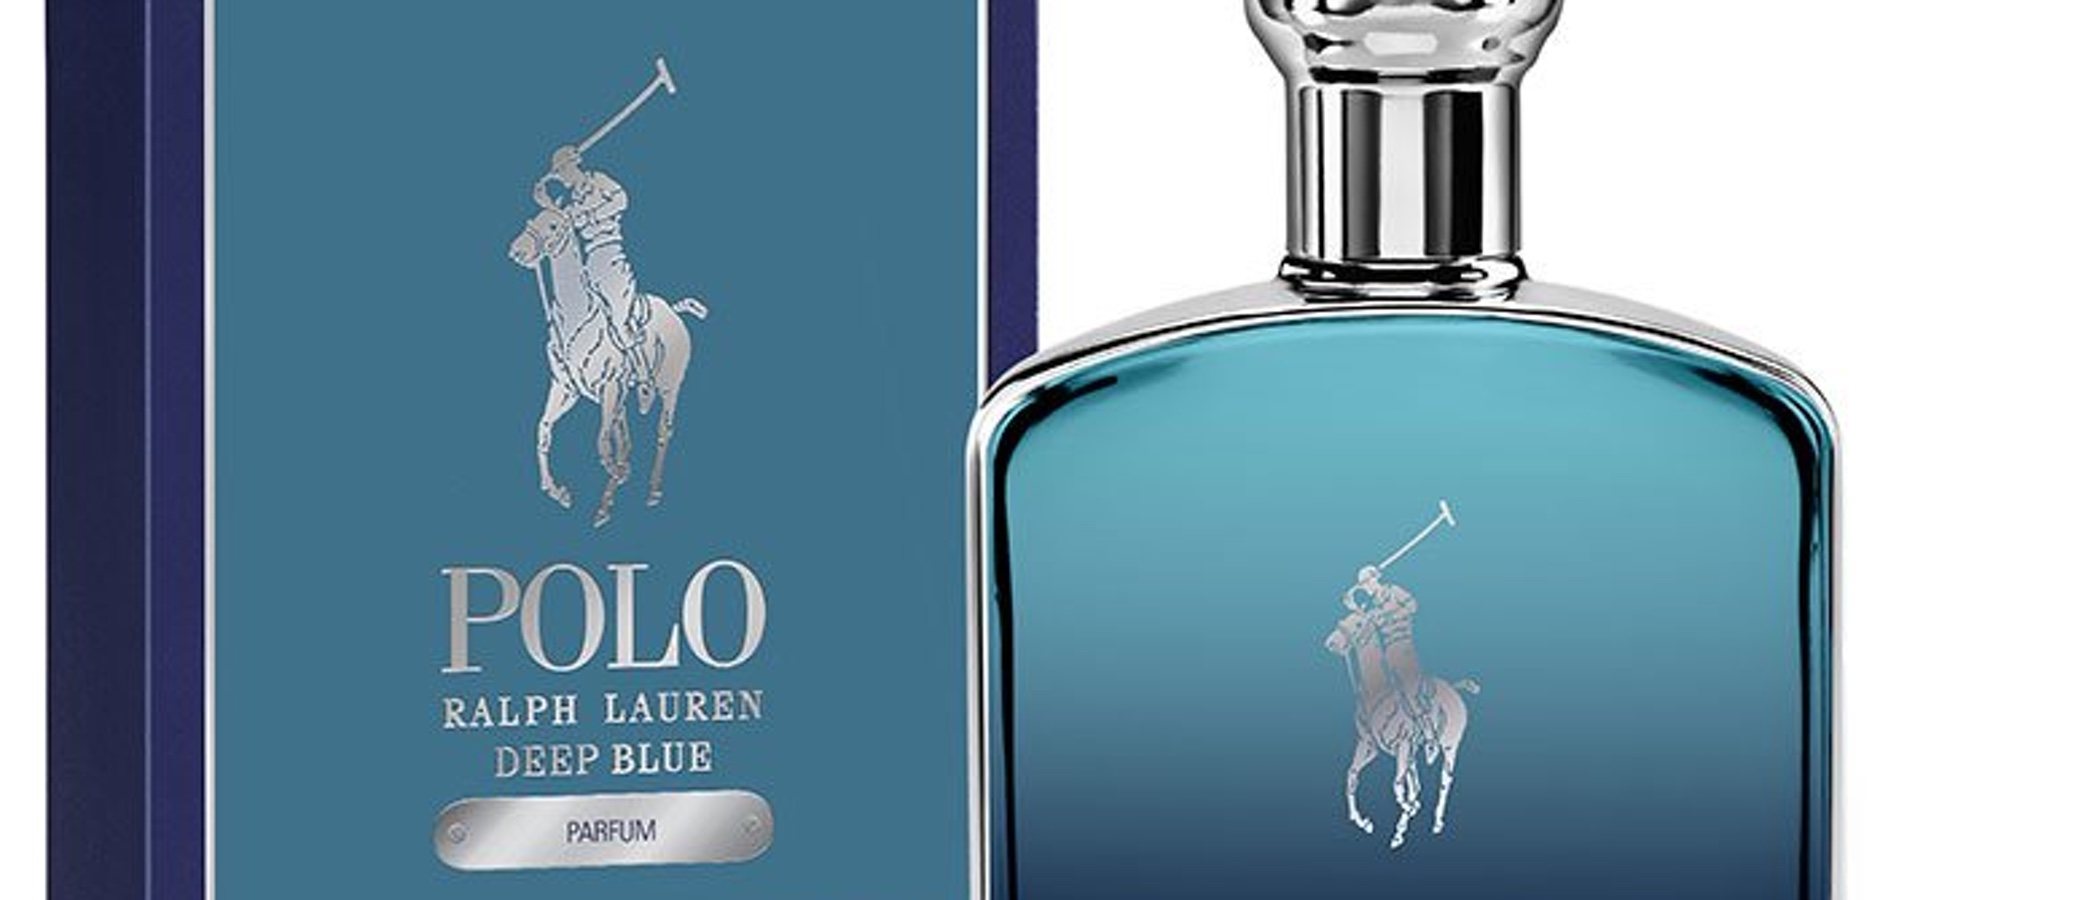 'Polo Deep Blue Parfum', la nueva y oceánica fragancia de Ralph Lauren